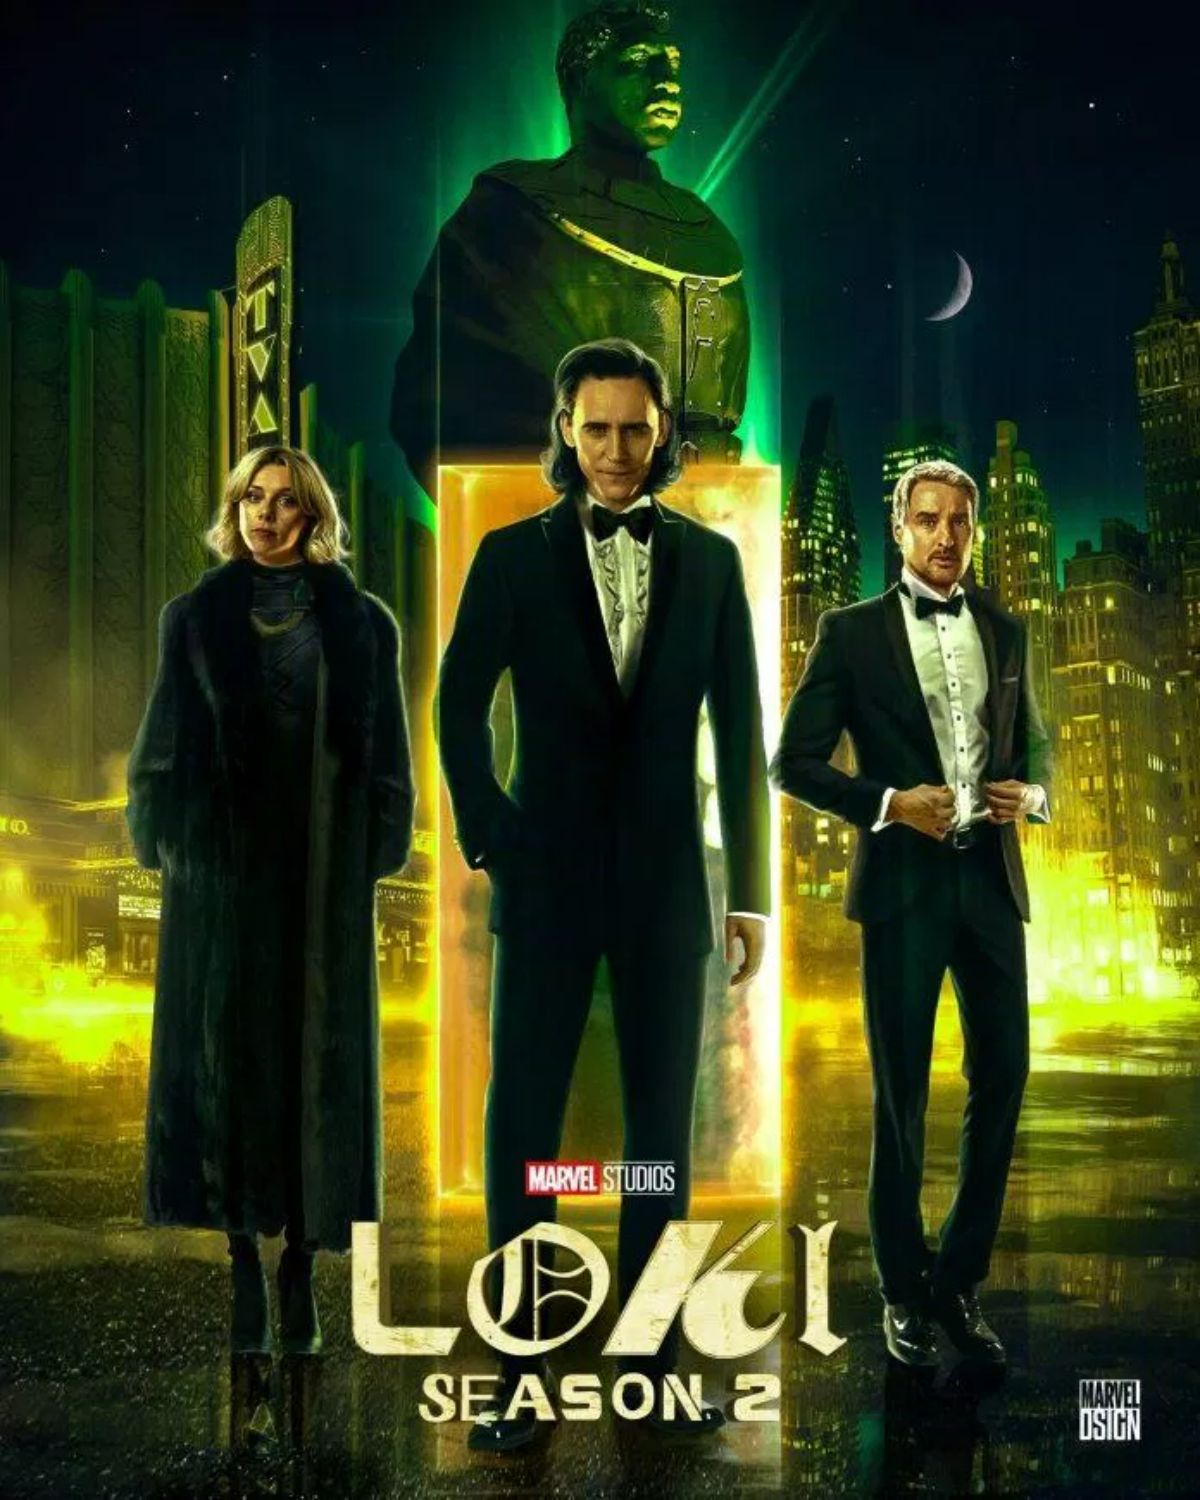 Từ một kẻ phản diện đáng khinh, Loki (Tom Hiddleston) bất đắc dĩ trở thành anh hùng, sử dụng quyền năng du hành thời gian cứu đa vũ trụ Marvel khỏi bờ vực diệt vong